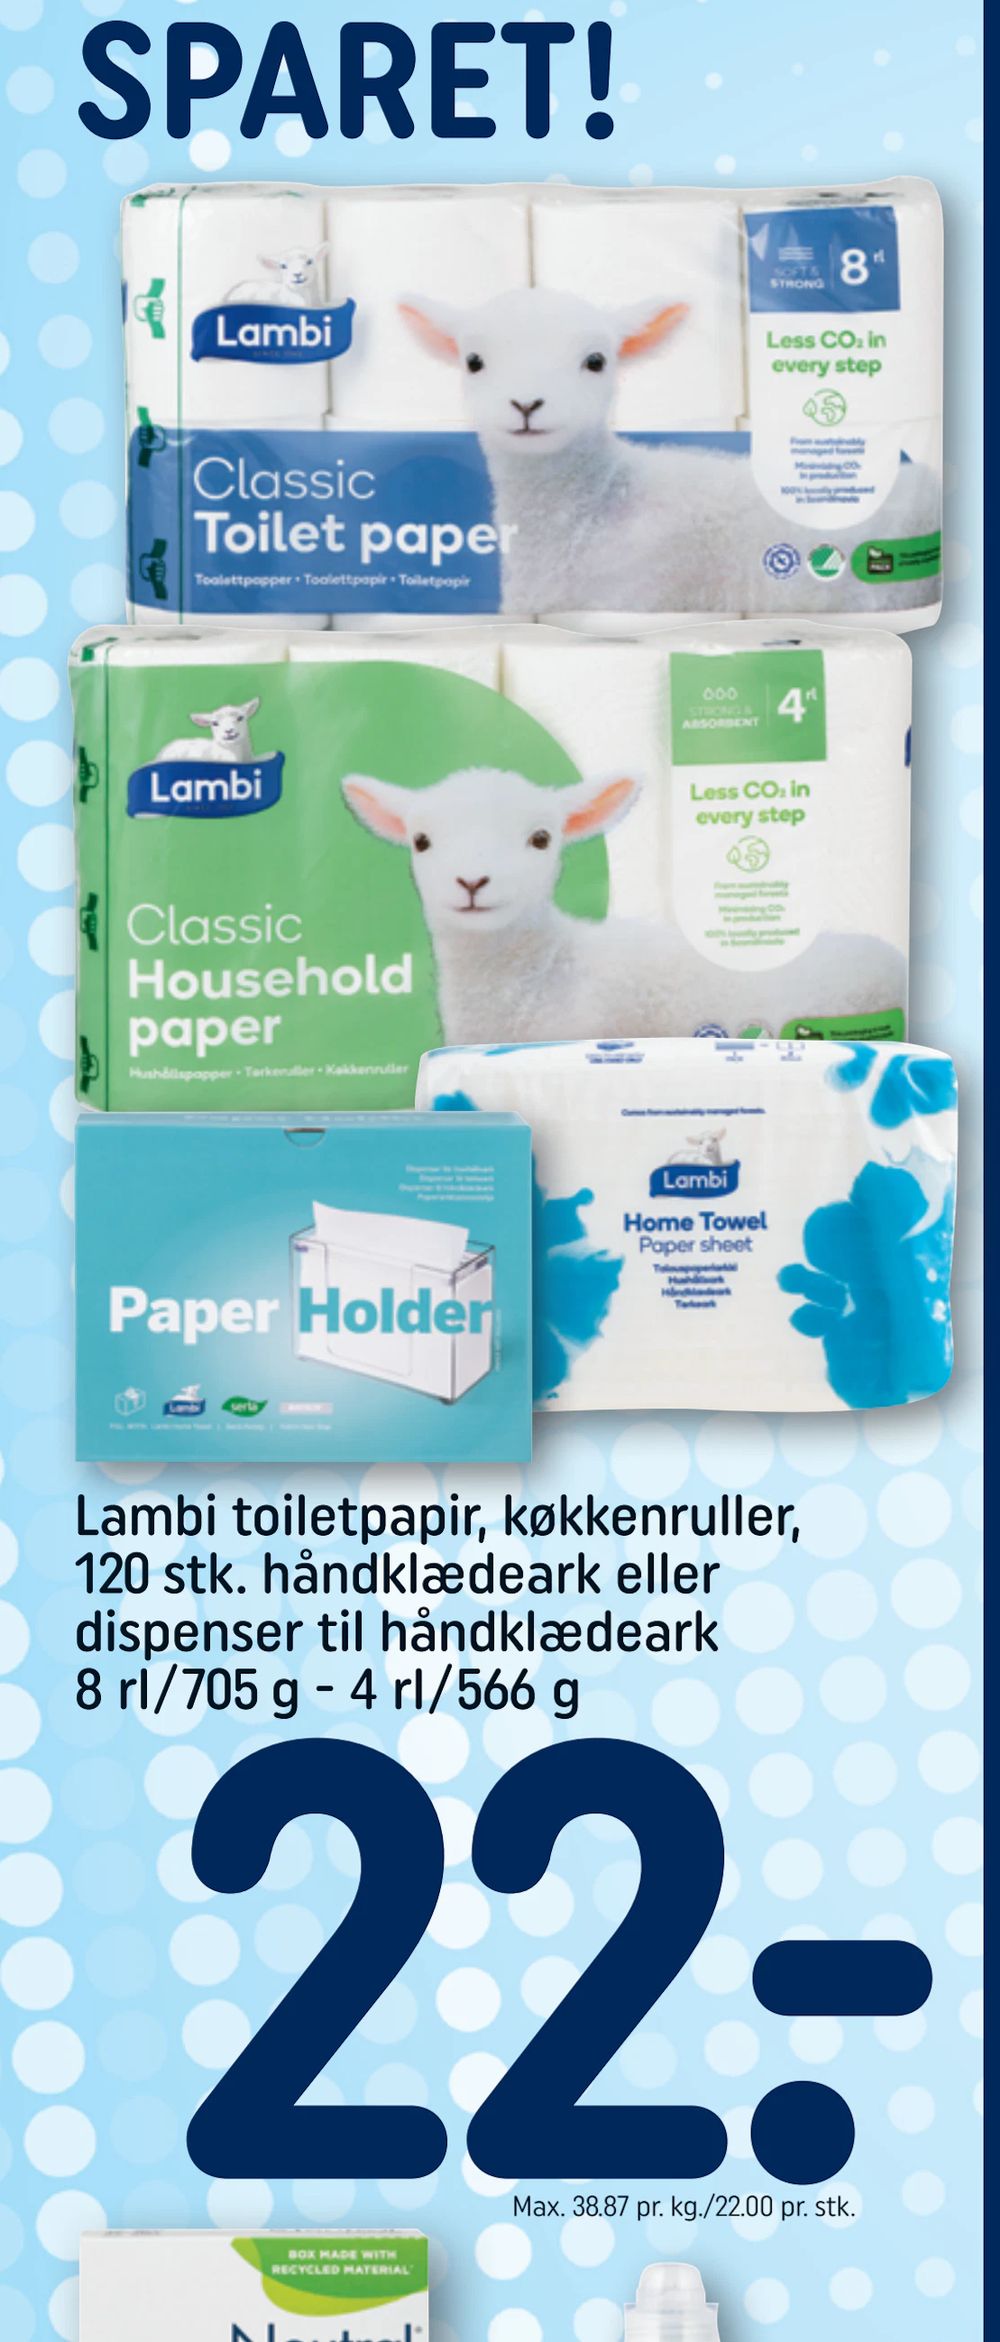 Tilbud på Lambi toiletpapir, køkkenruller, 120 stk. håndklædeark eller dispenser til håndklædeark 8 rl/705 g - 4 rl/566 g fra REMA 1000 til 22 kr.